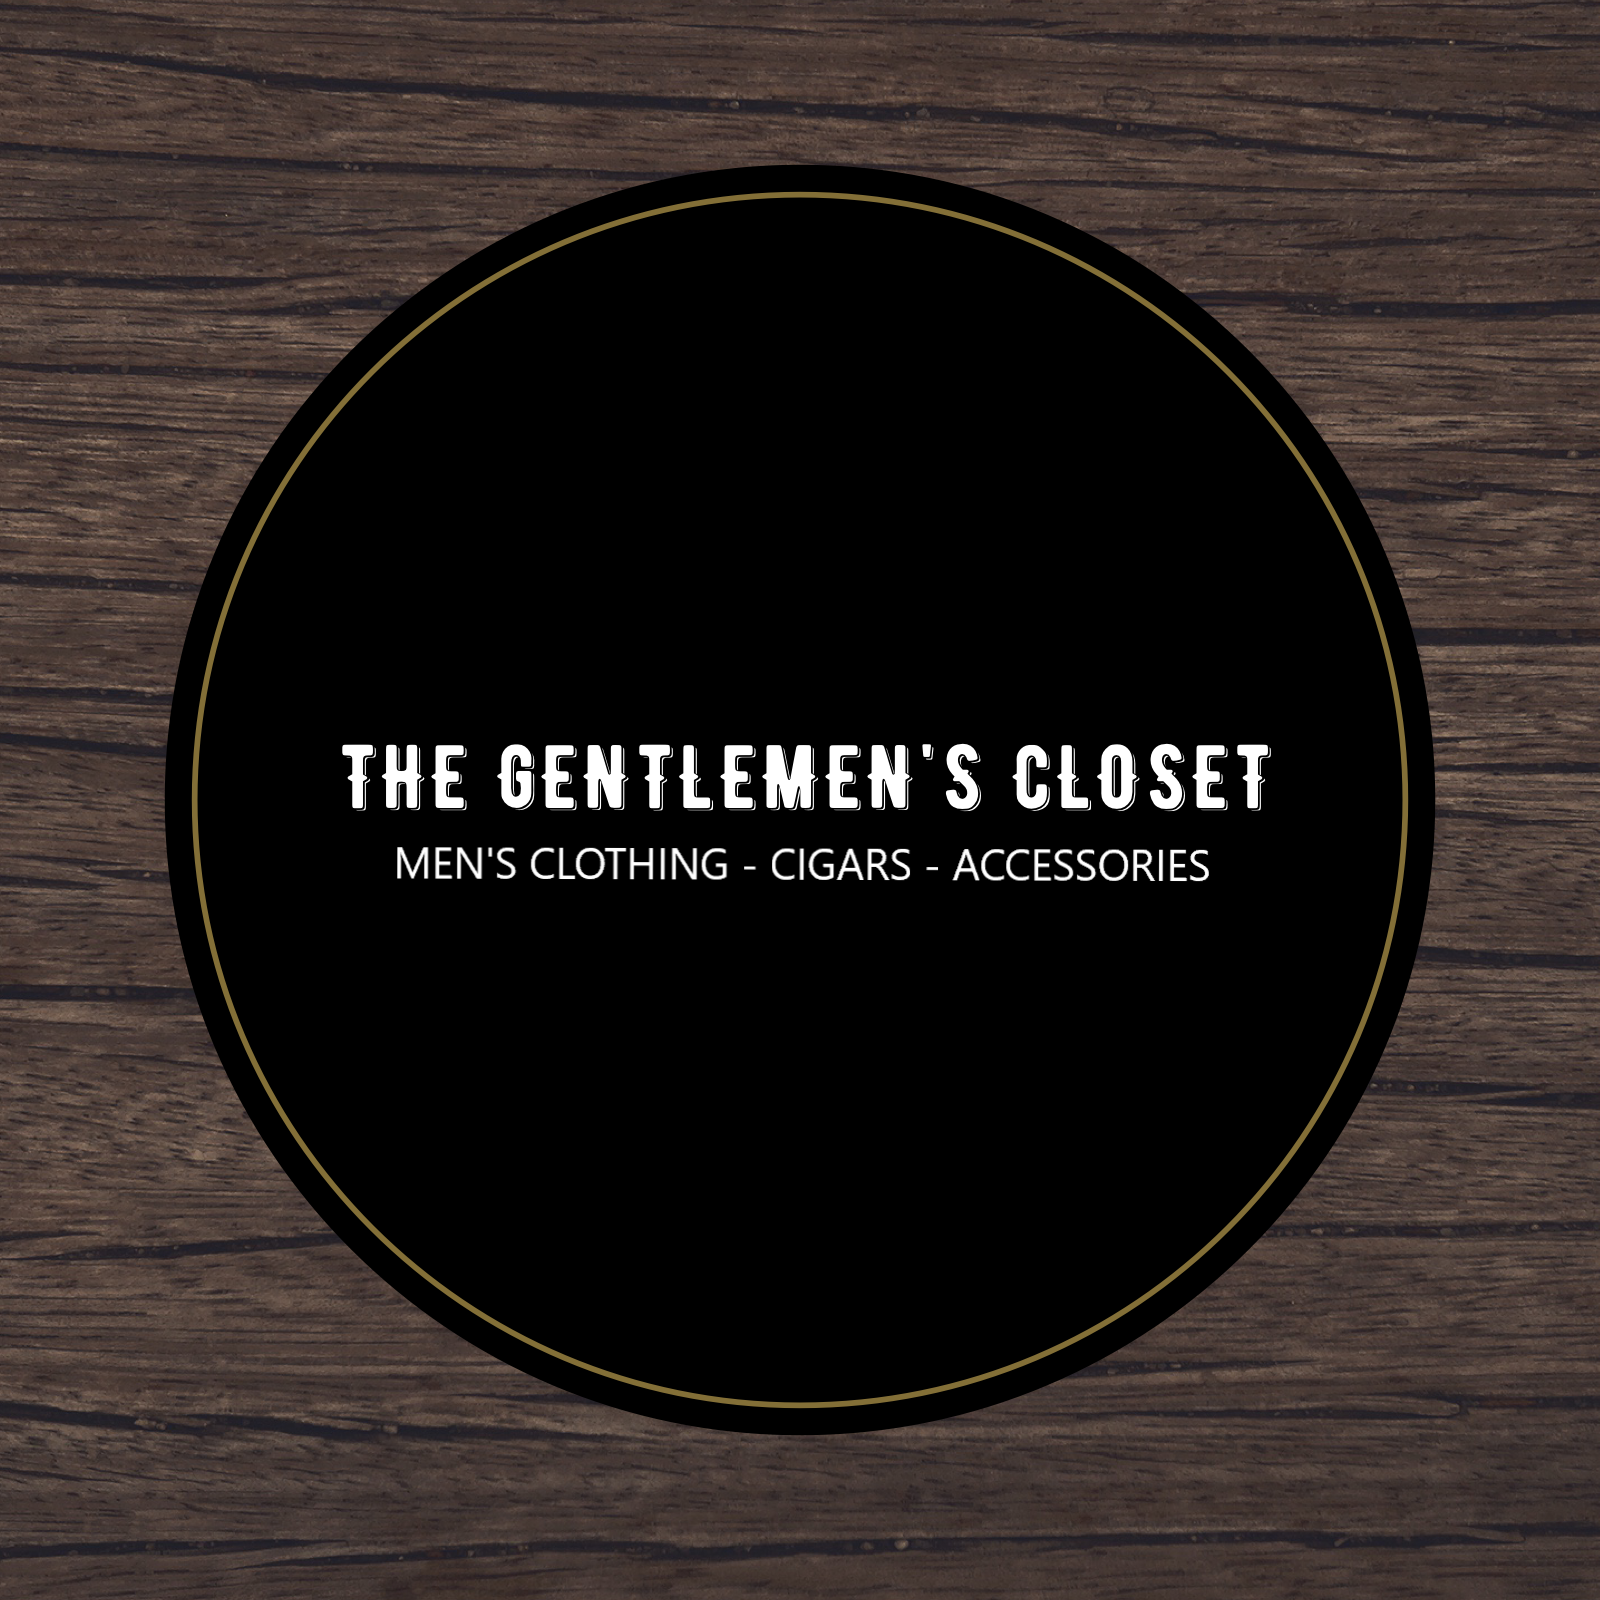 Premium Cigars - The Gentlemens Closet